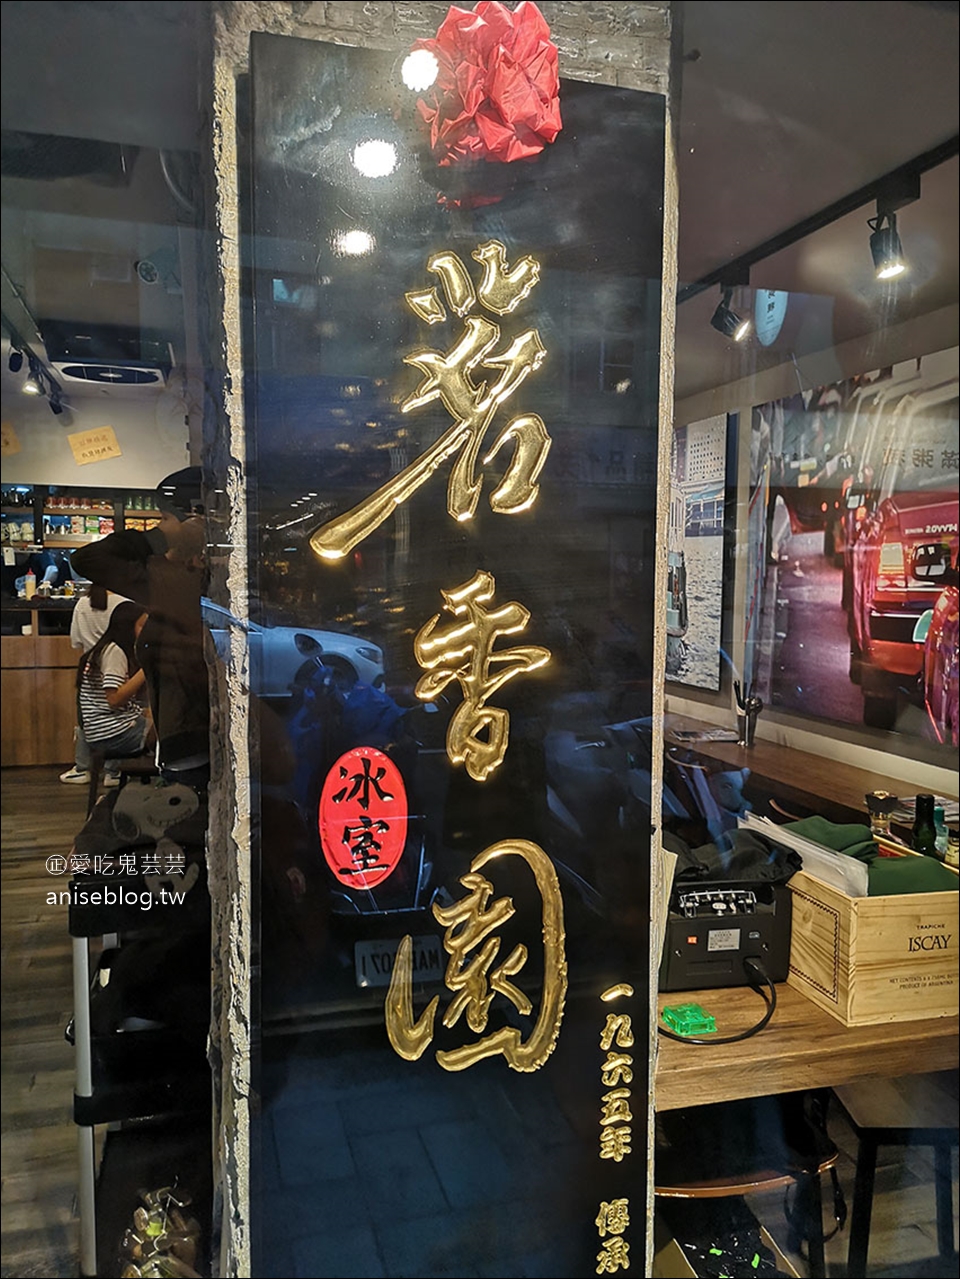 茗香園冰室 – 大安店，東區新開茶餐廳